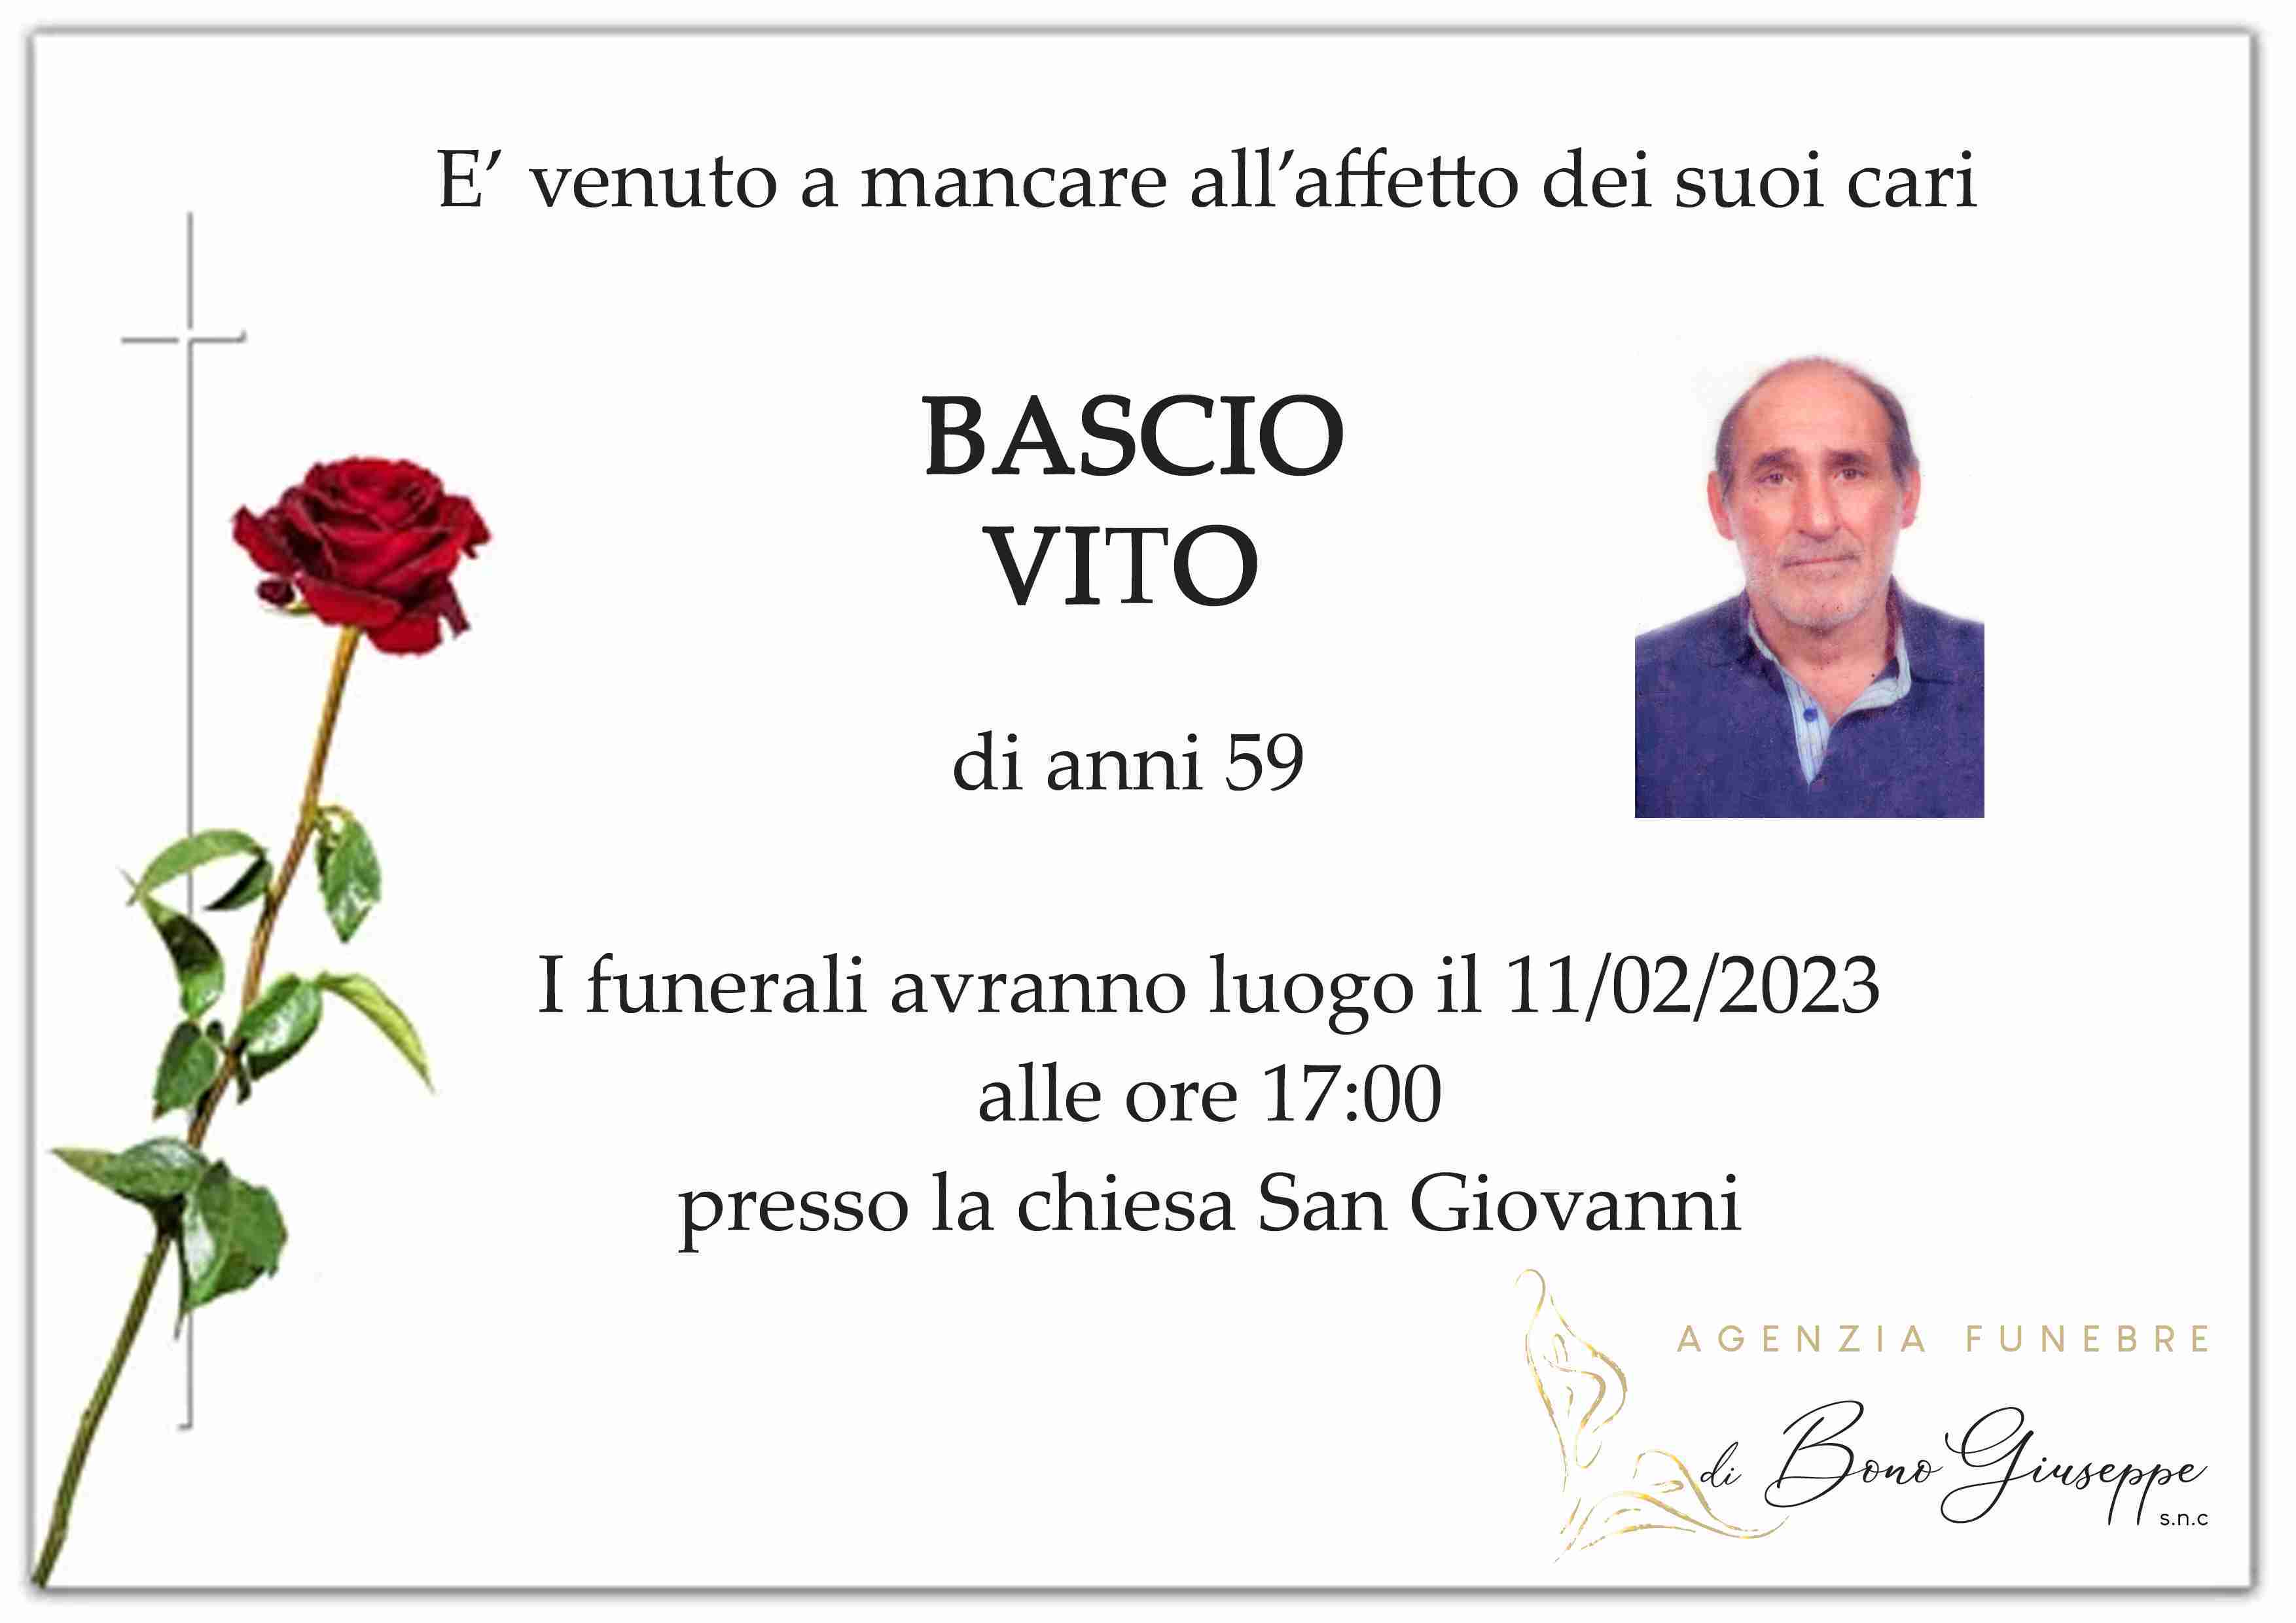 Vito Bascio